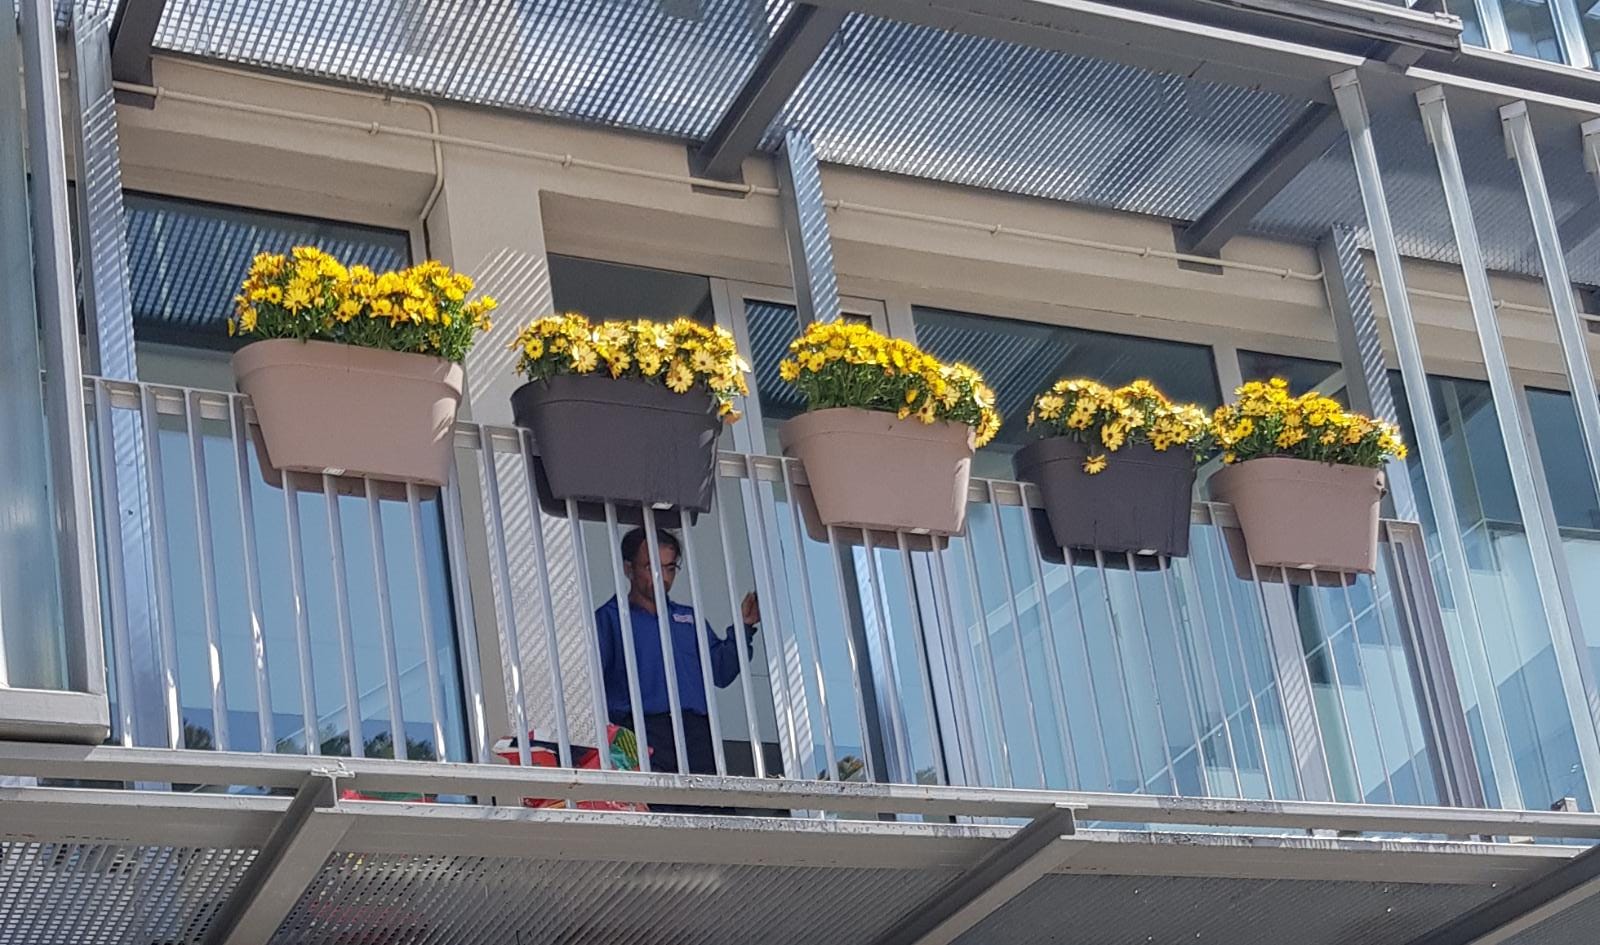 L'Ajuntament de Premià de Dalt substitueix el llaç groc per flors grogues